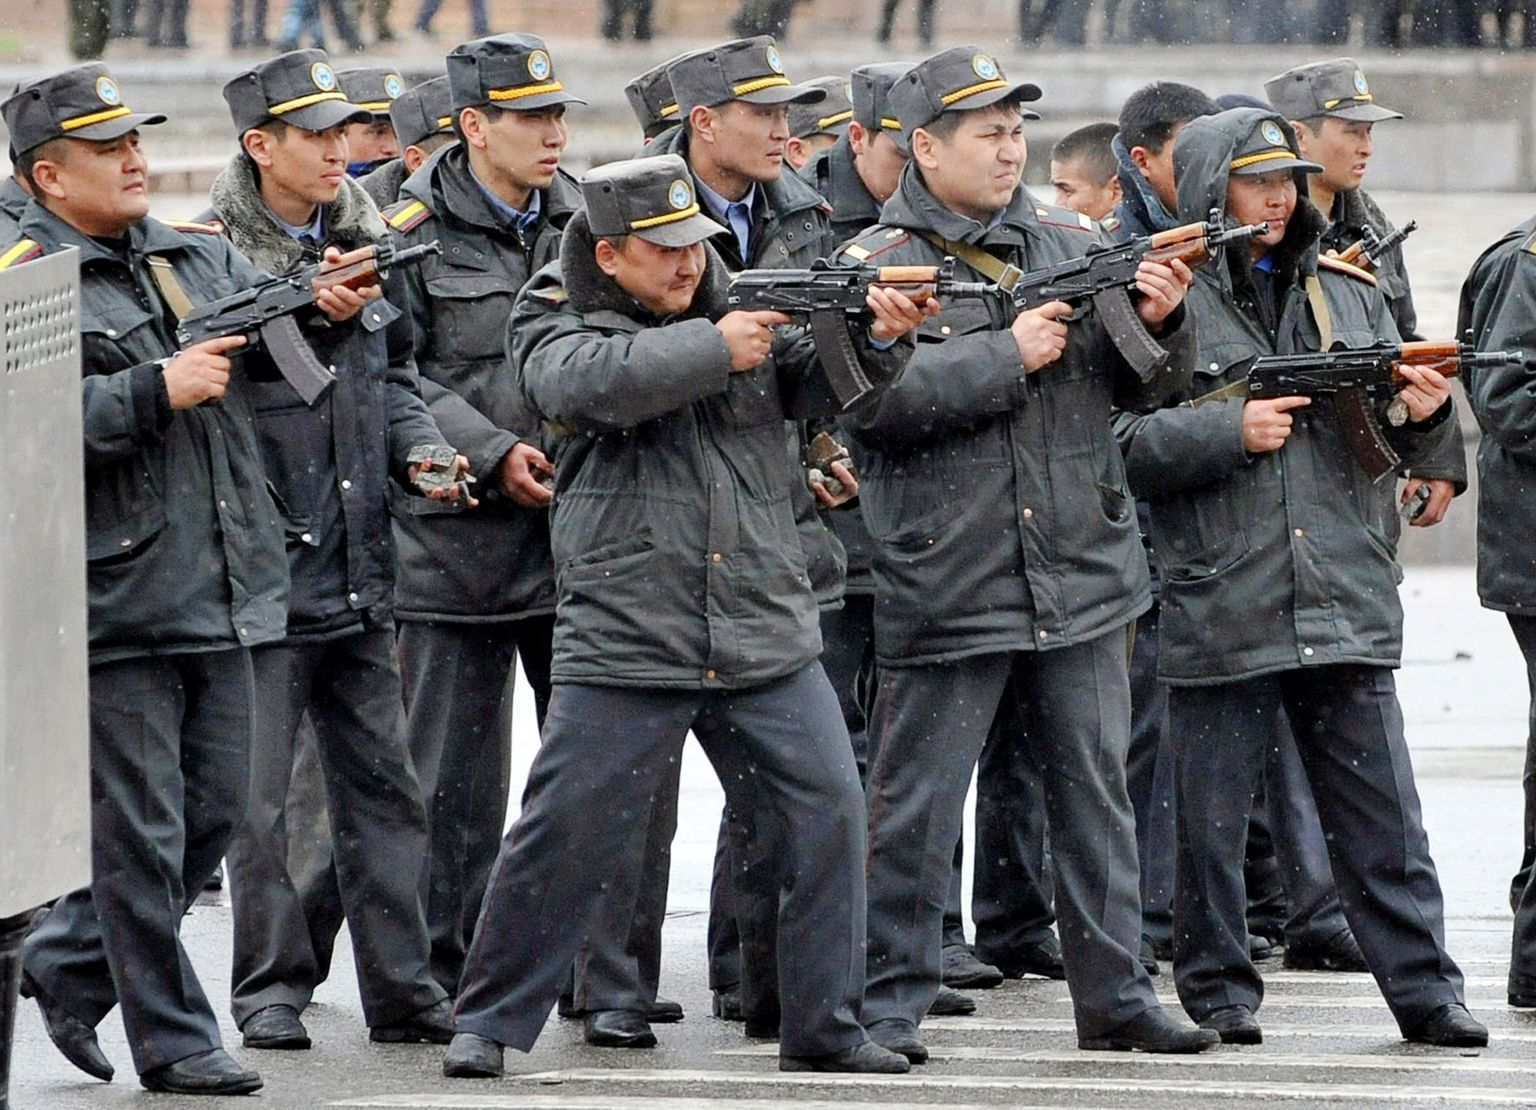 Kõrgõzstani politseinikud üritavad peatada meeleavaldajate pealetungi valitsushoonele.